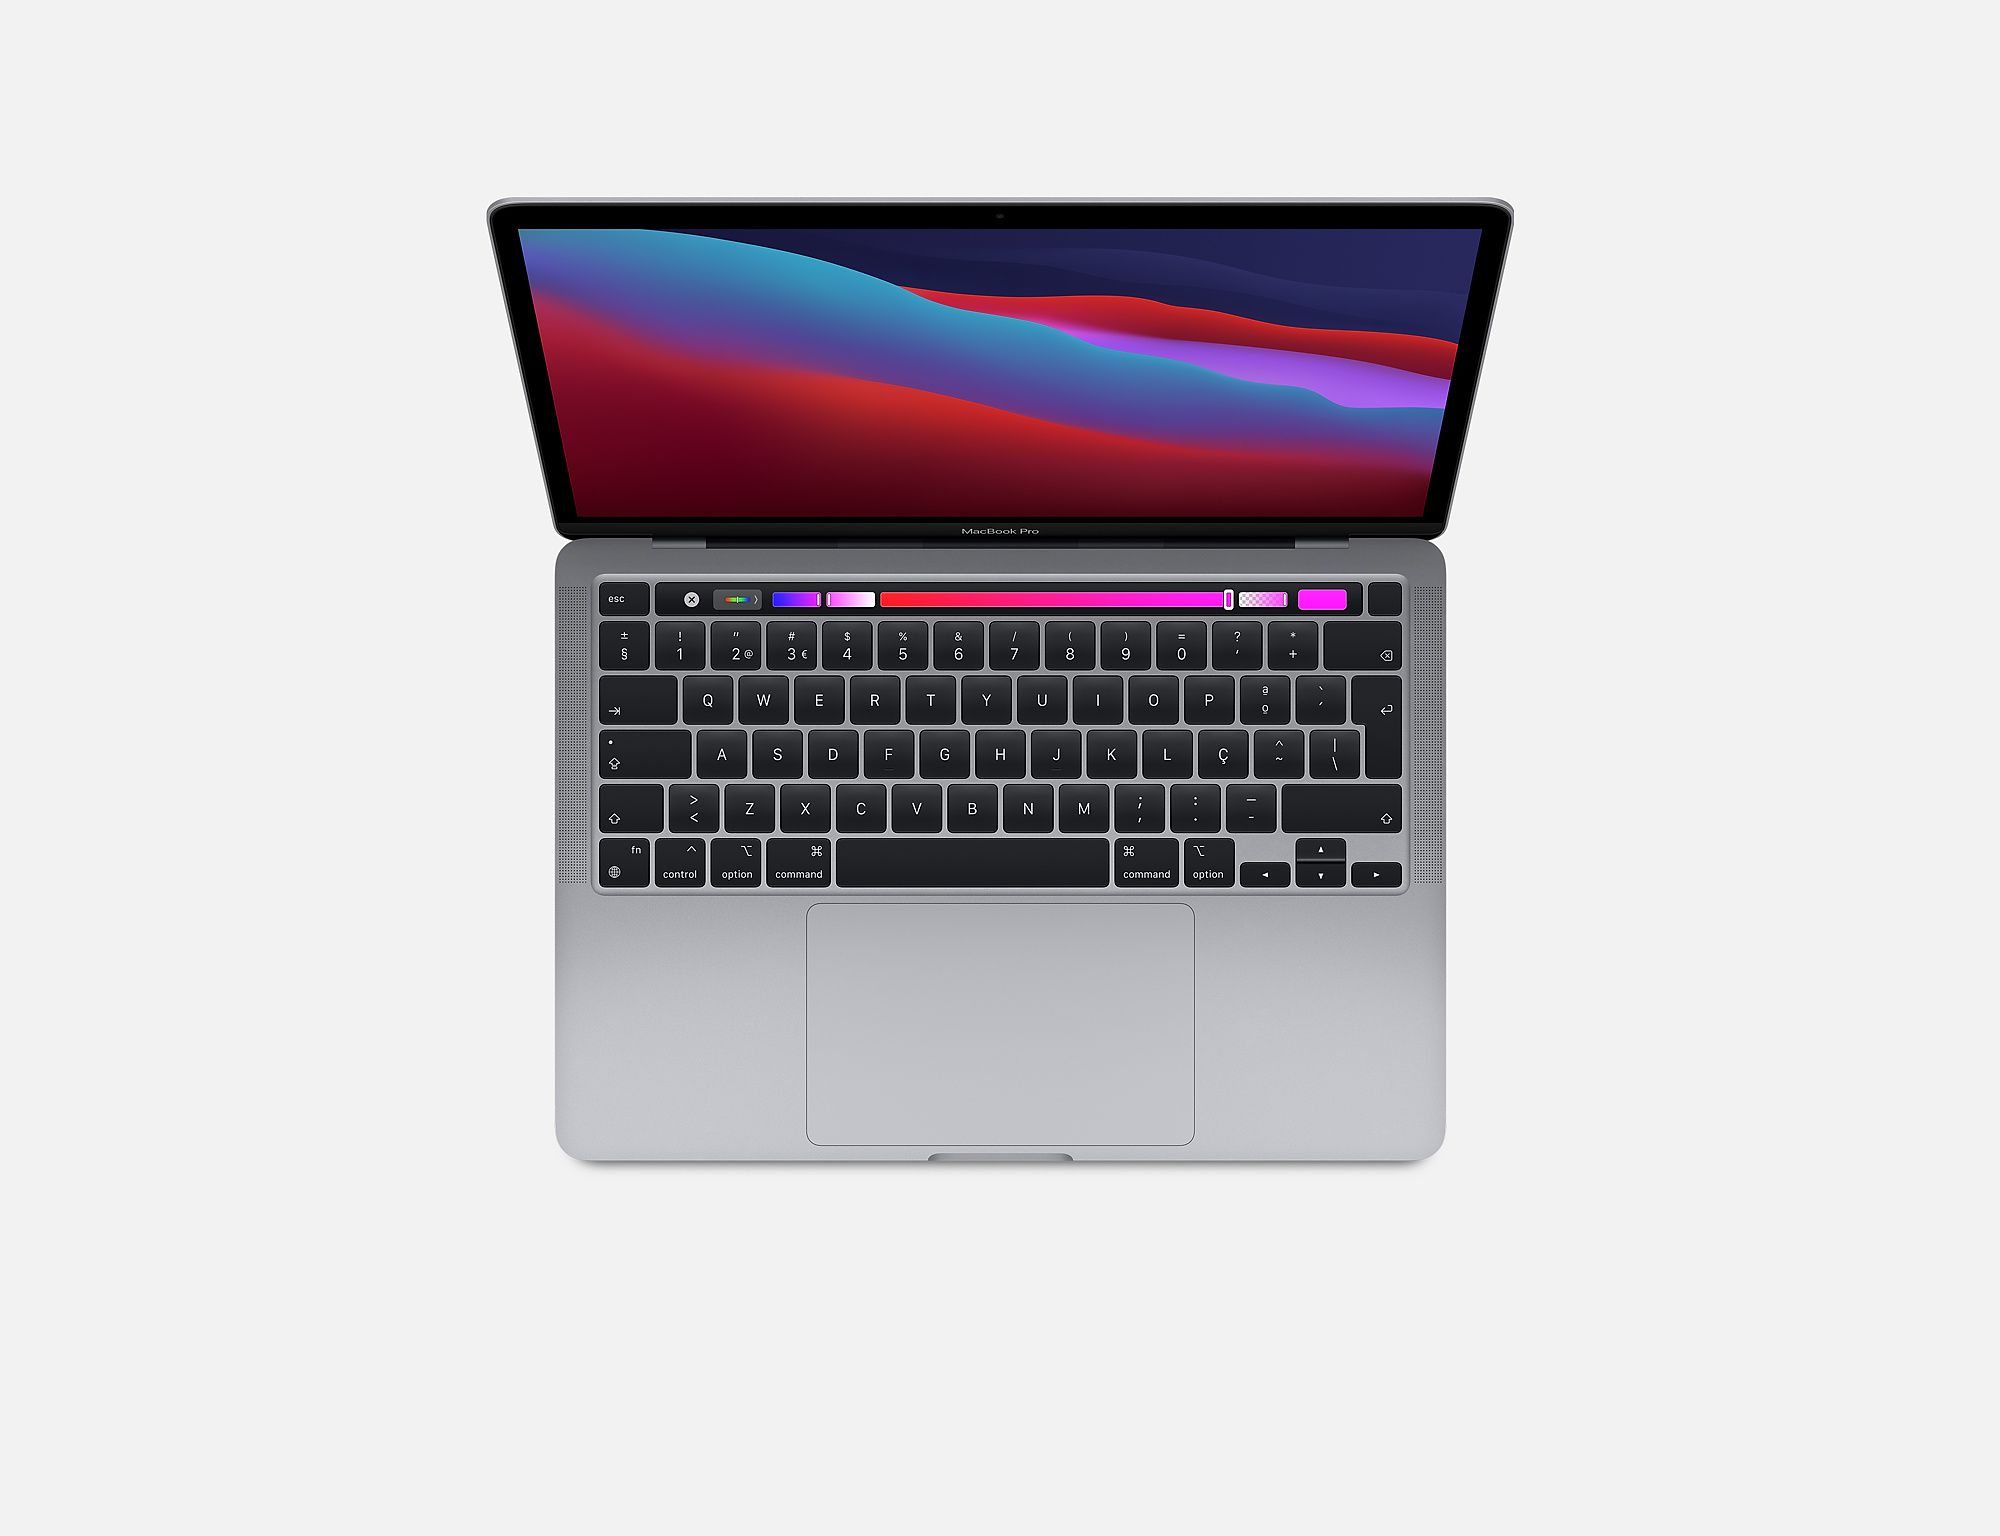 Apple MacBook Pro 2020 13インチ スペースグレイ - ノートPC